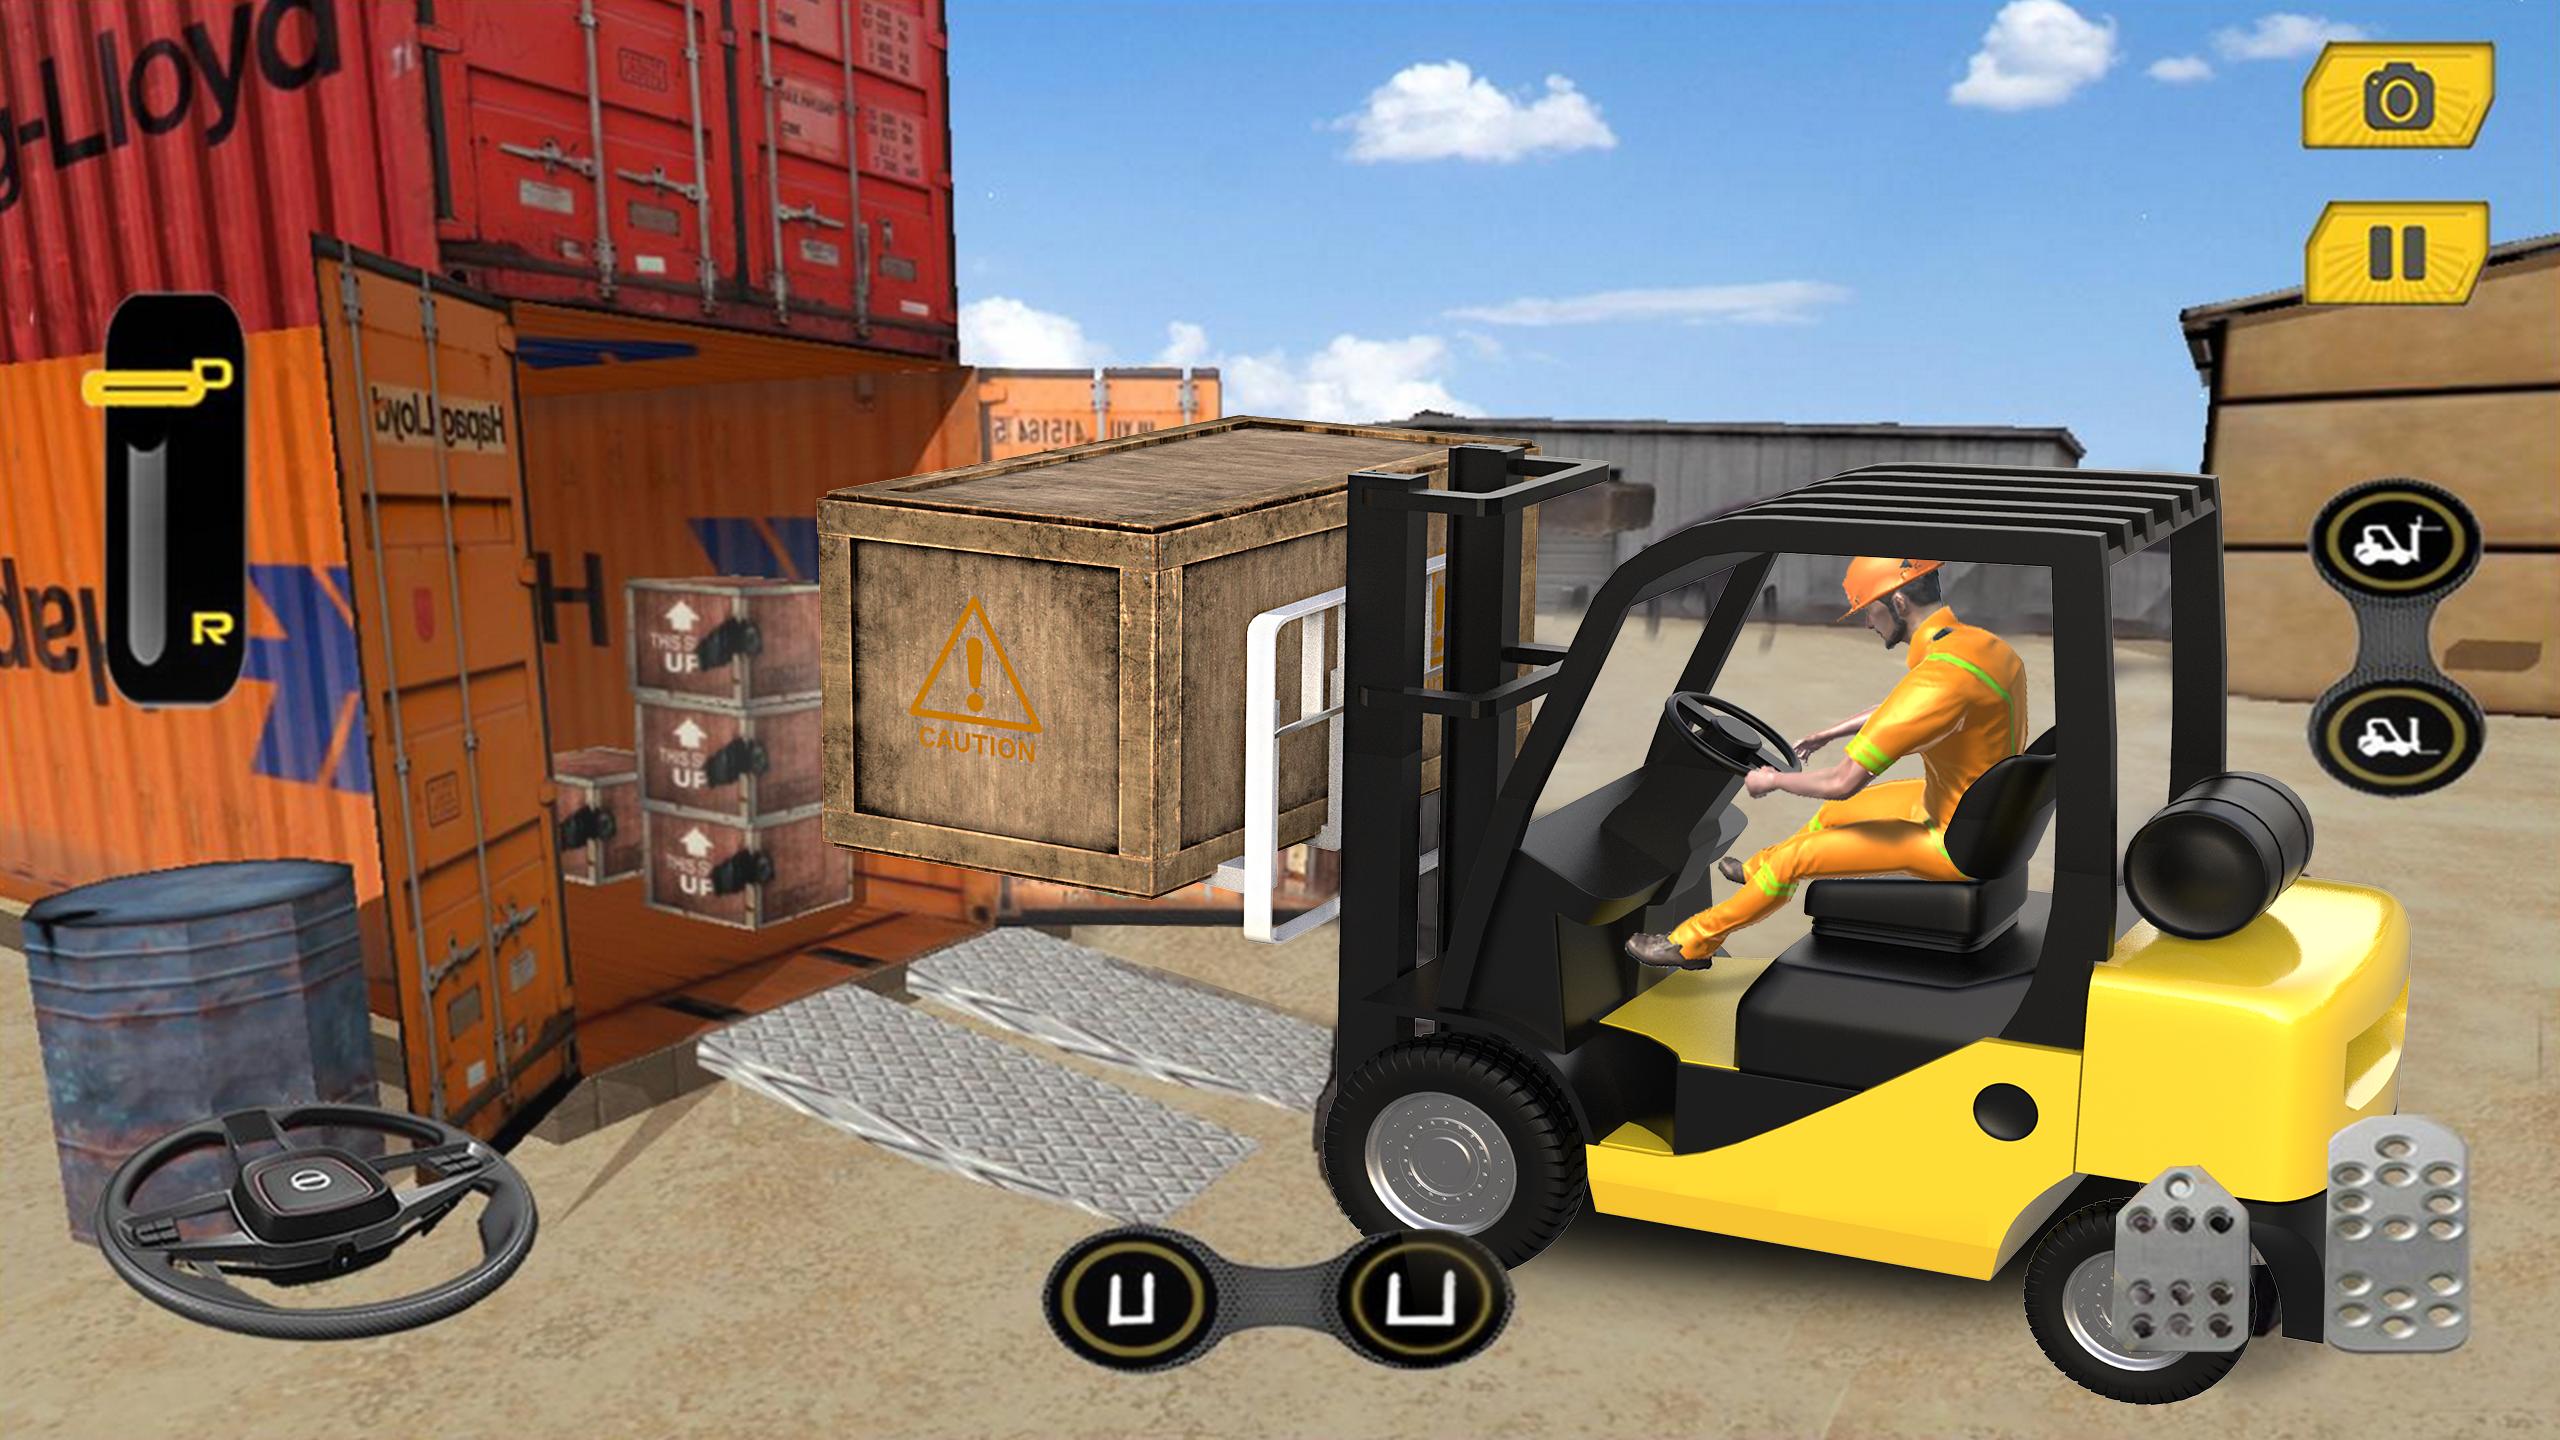 Real Forklift Simulator 2019: Cargo Forklift Games 3.1 Screenshot 4